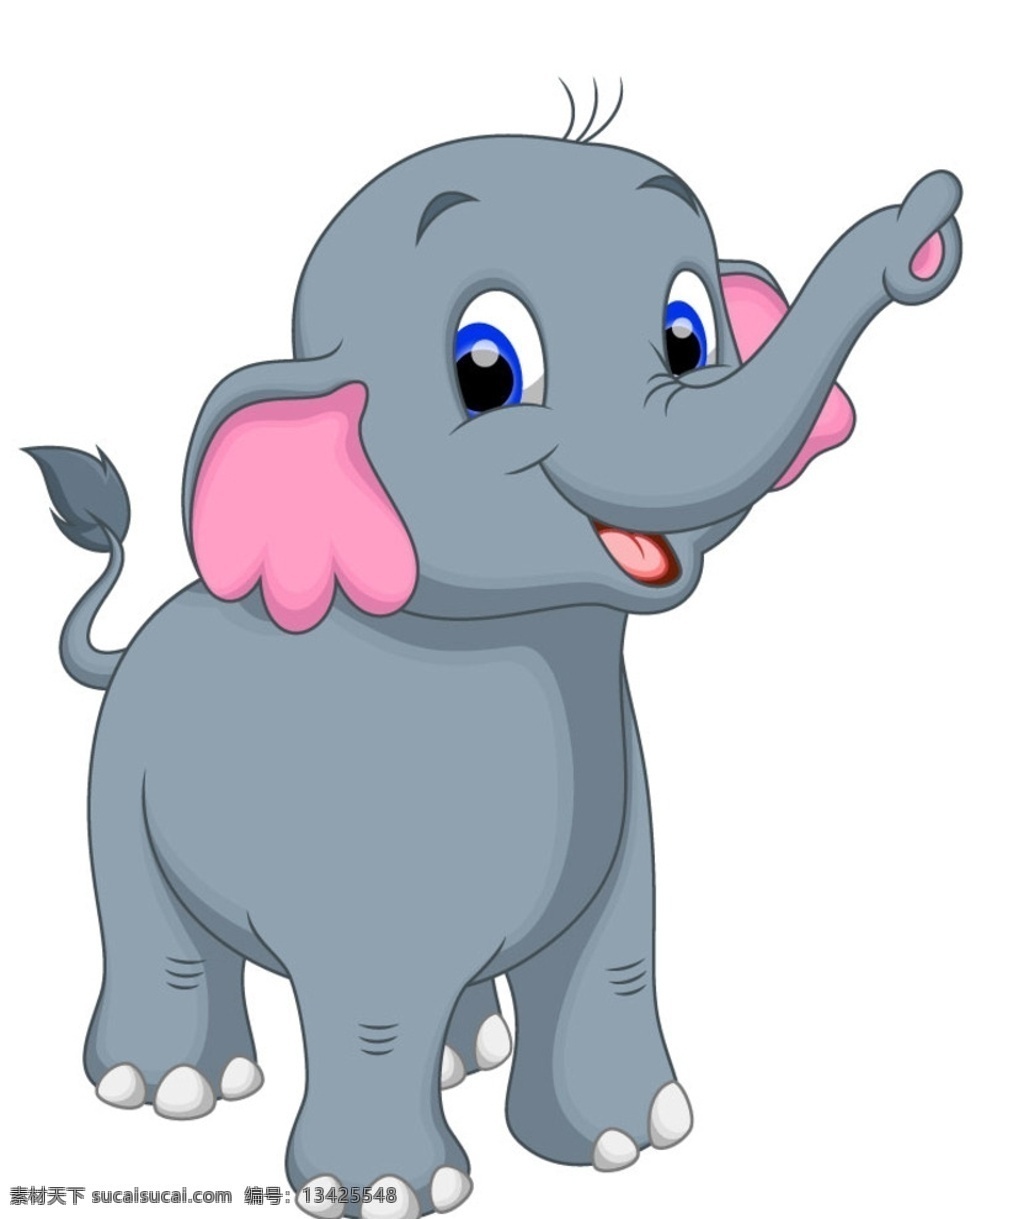 卡通大象 大象 小象 可爱小象 卡通动物 卡通设计